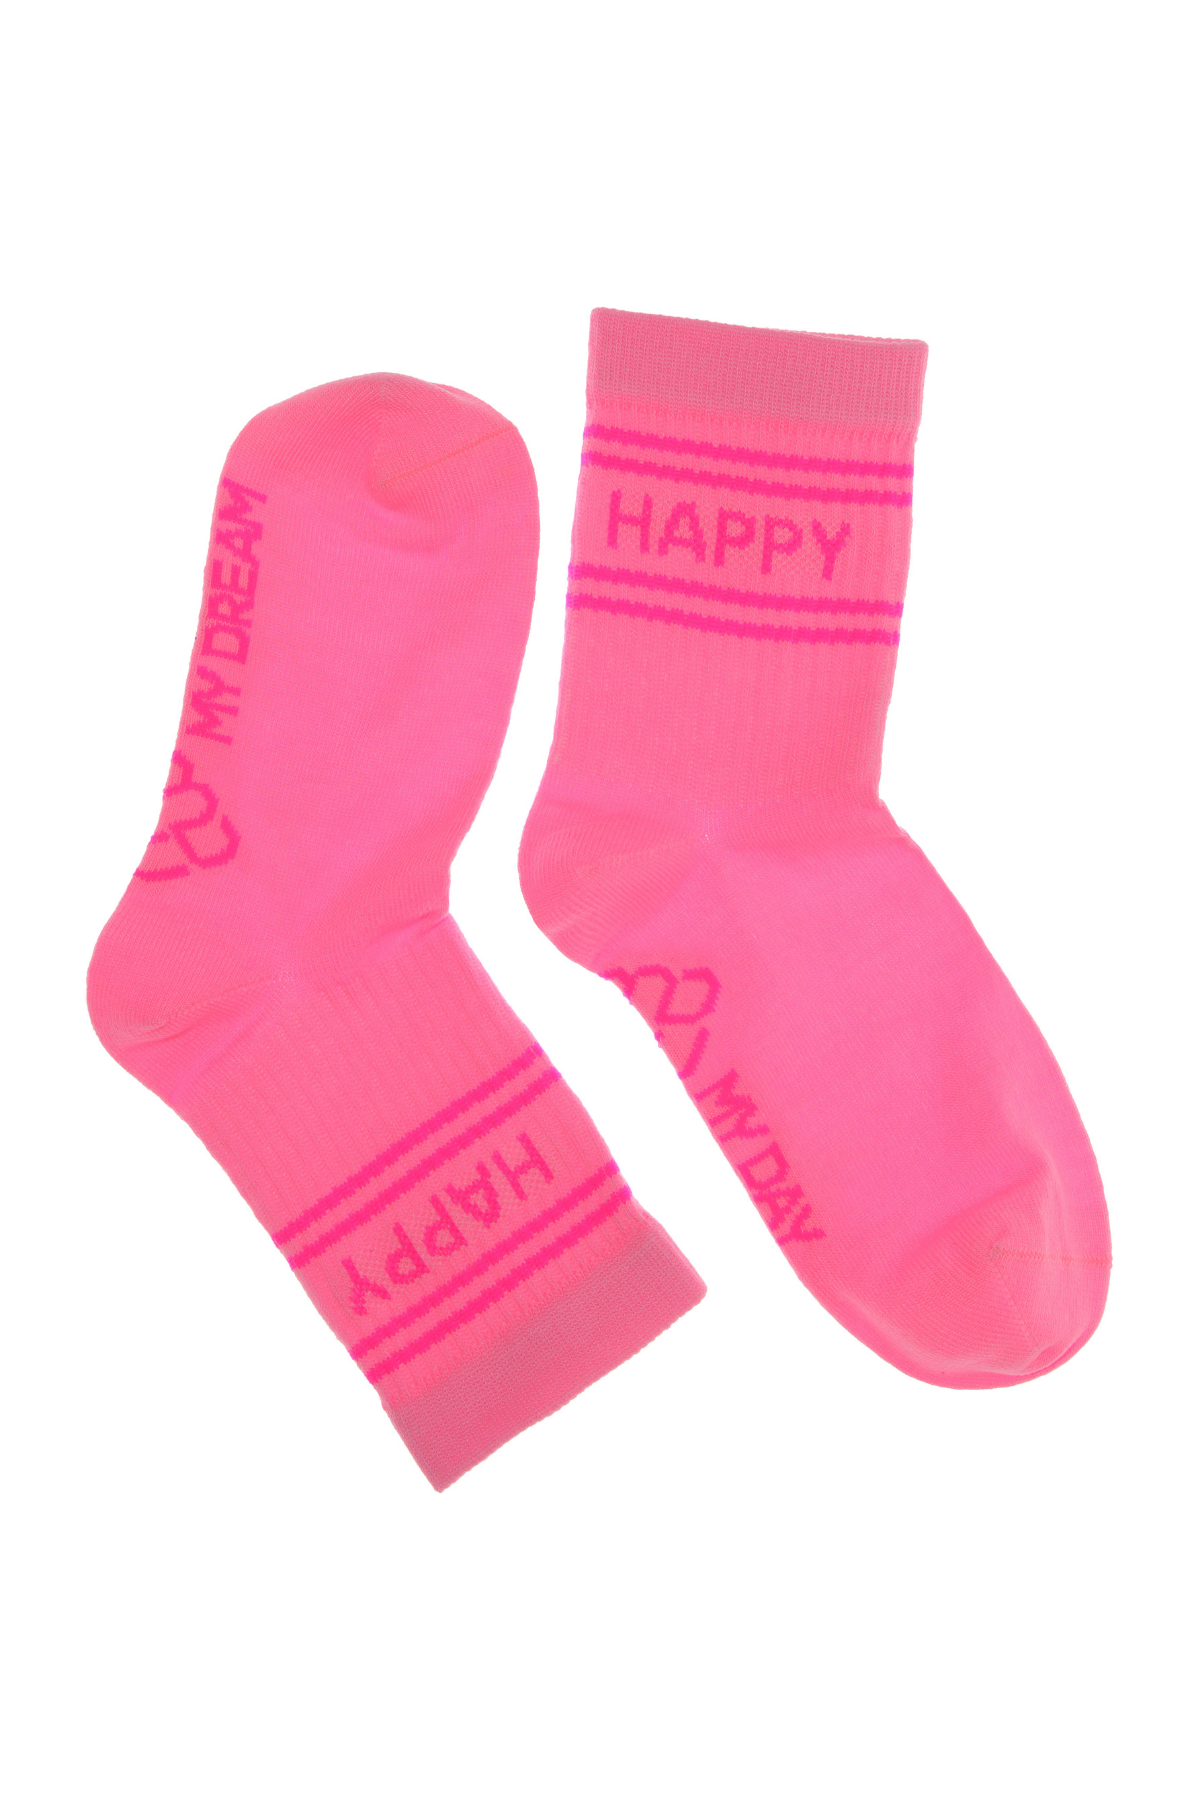 Kids Socken "Happy" | verschiedene Farben